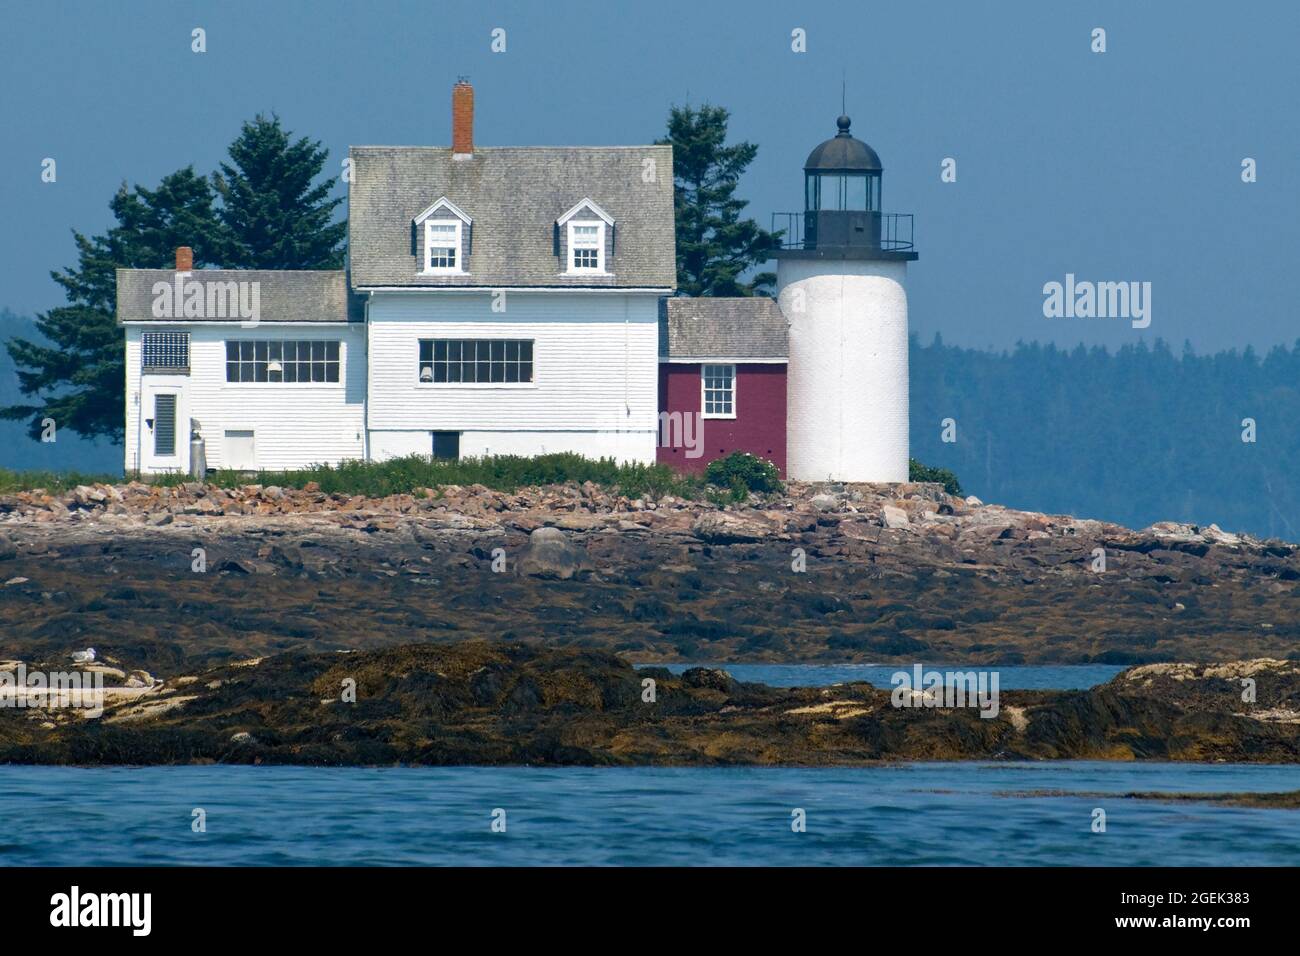 La lumière de Blue Hill Bay, également appelée phare d'Eggemoggin, se trouve sur une petite île basse le long de la rive rocheuse à marée basse dans le Maine. Banque D'Images